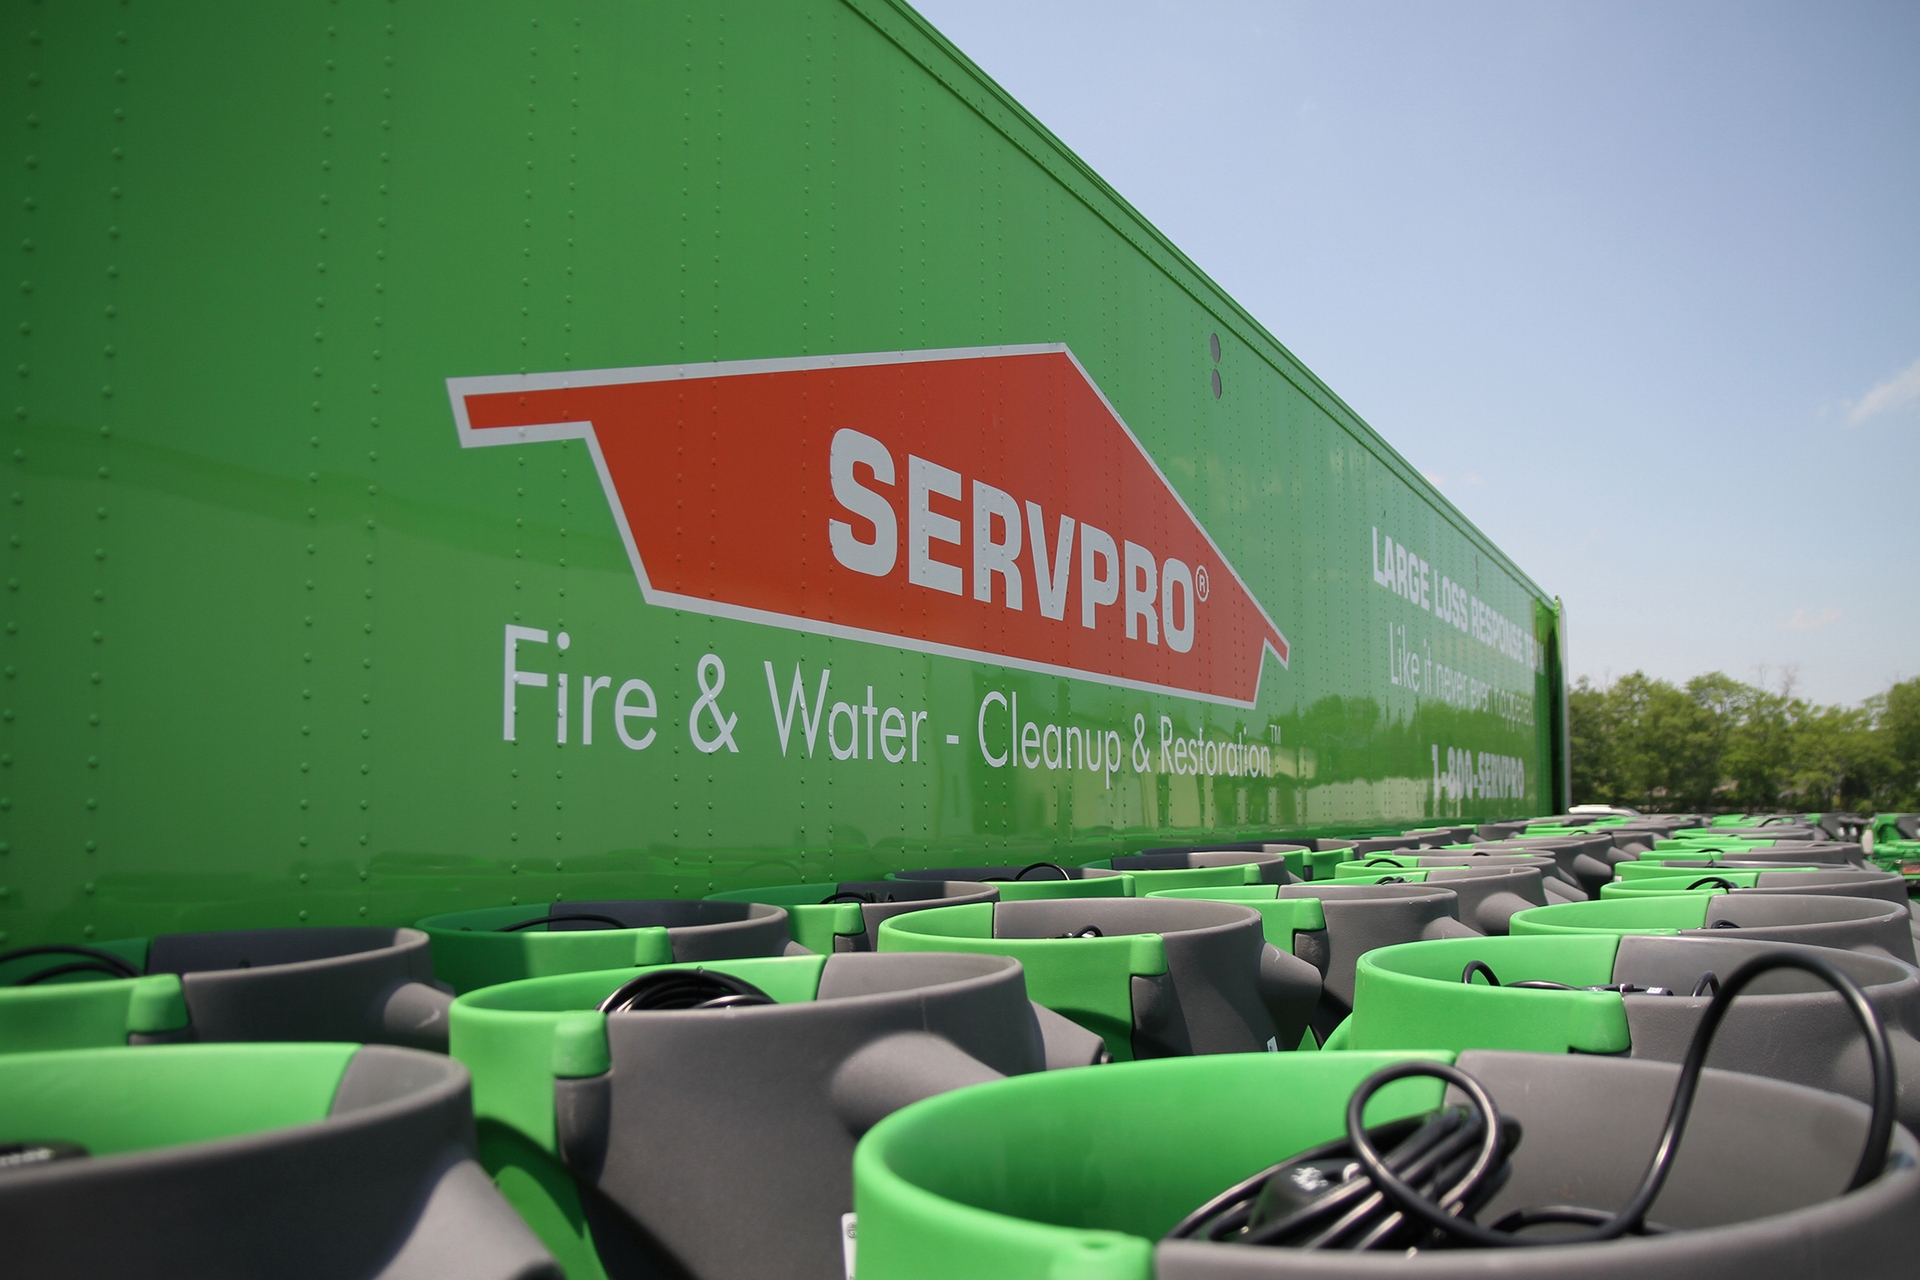 Side of trailer showing SERVPRO logo